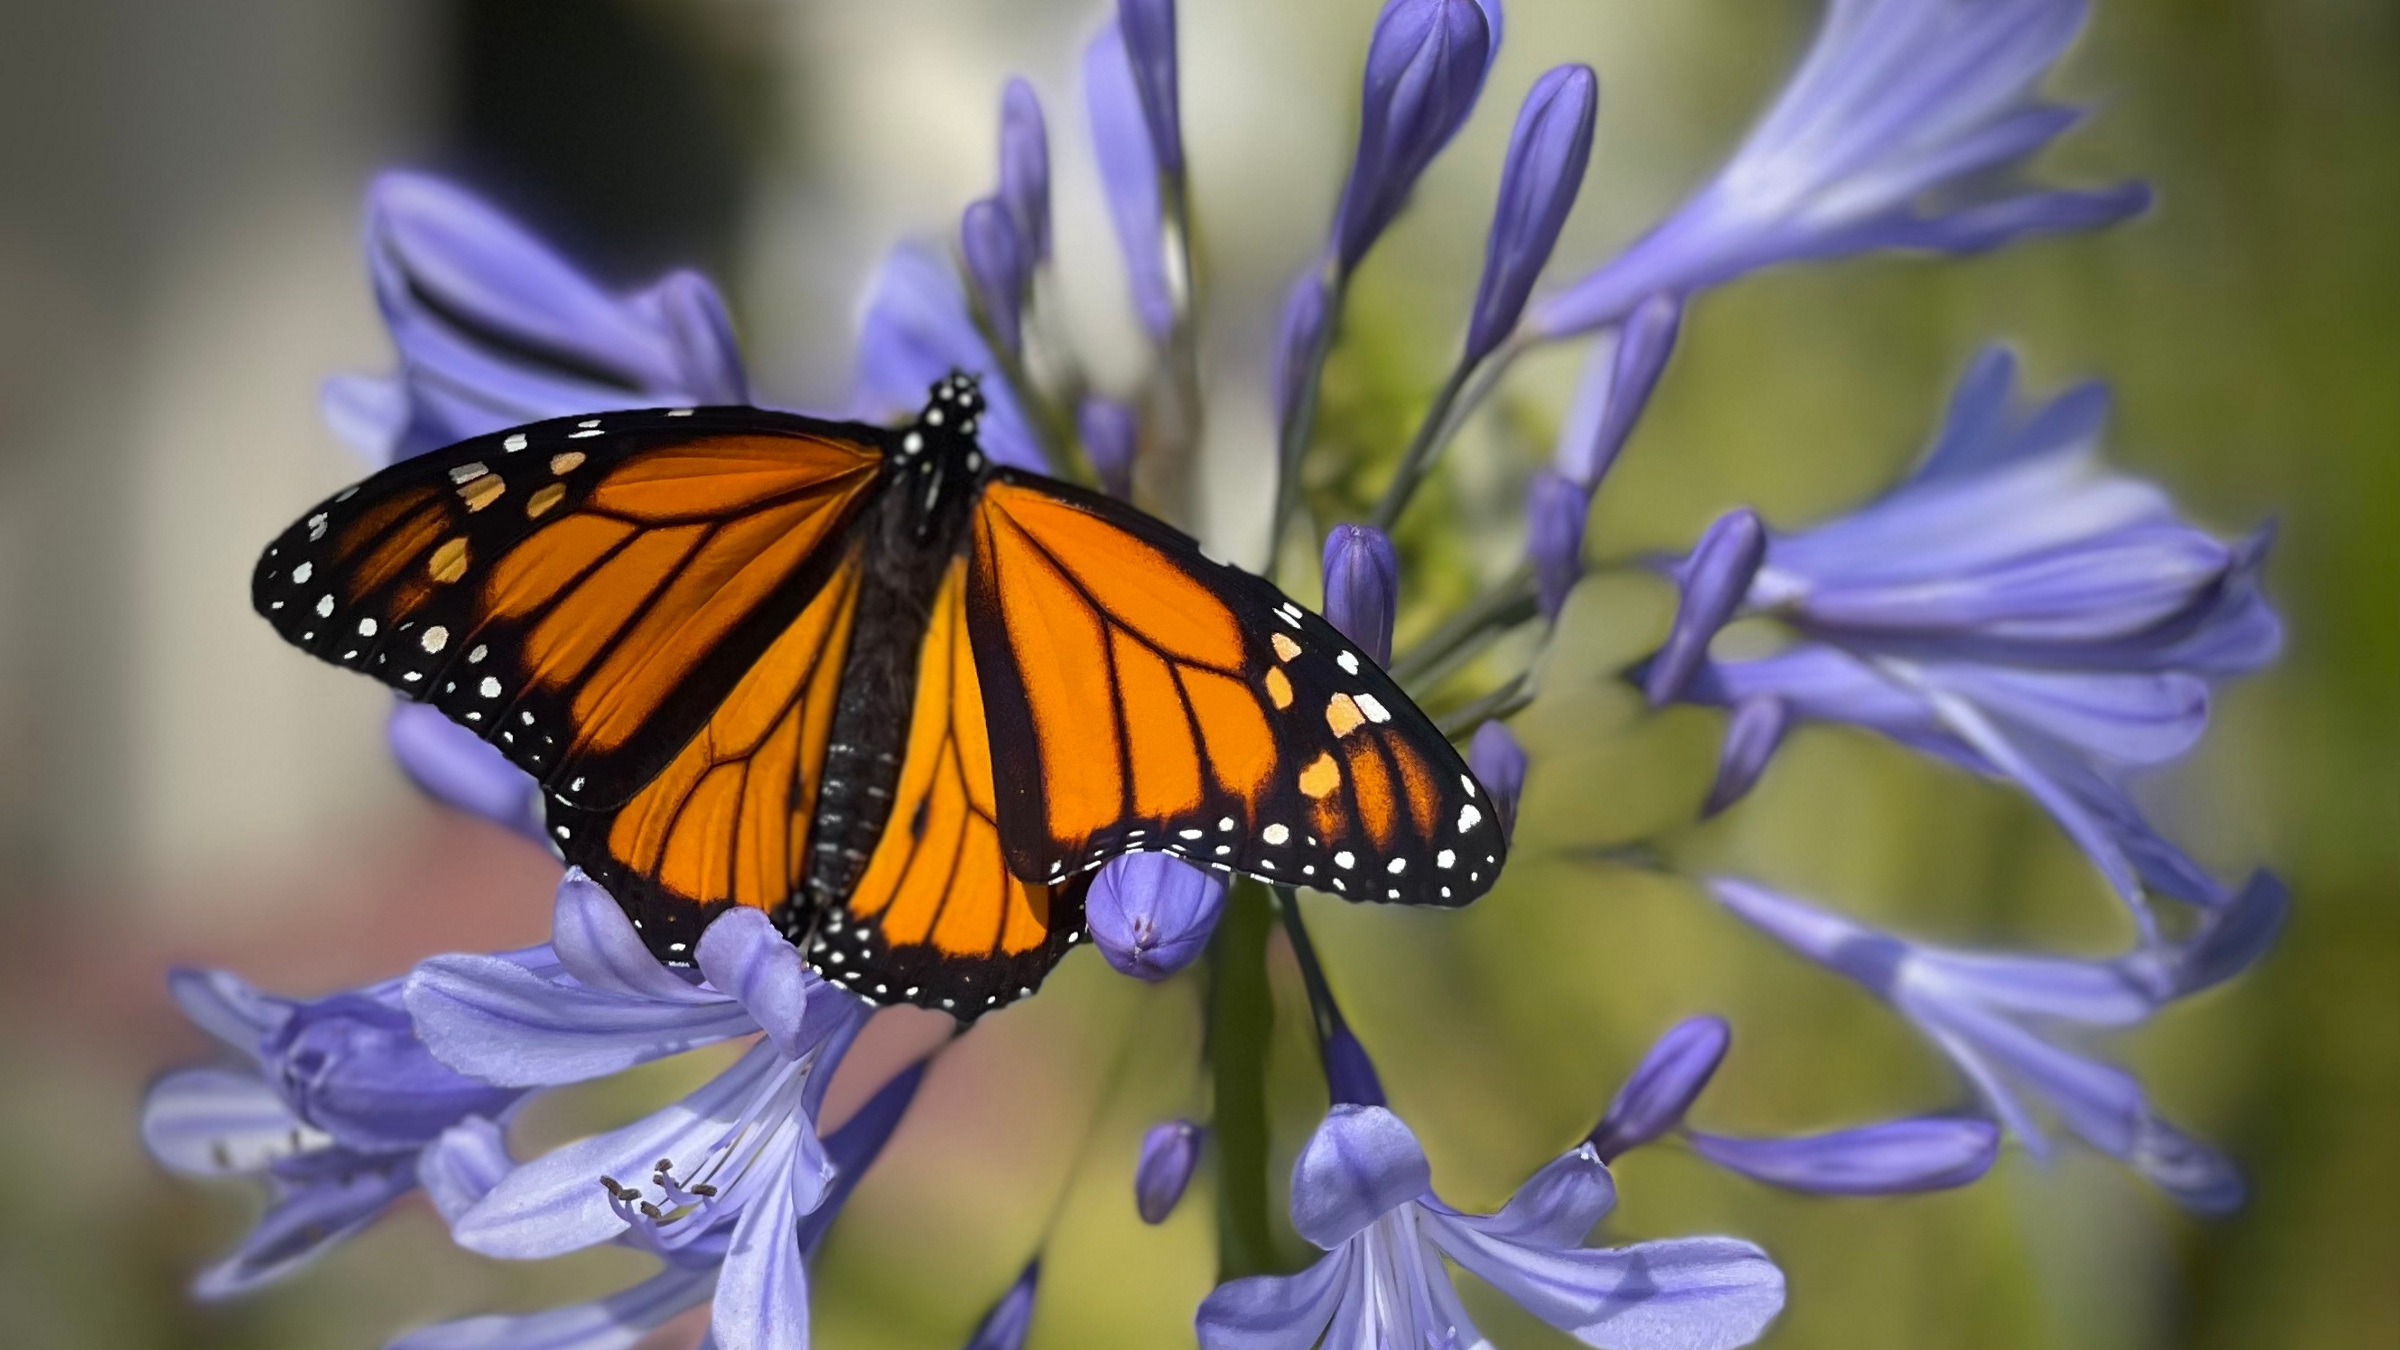 Credit: Shutterstock. Monarch butterfly on purple flowers